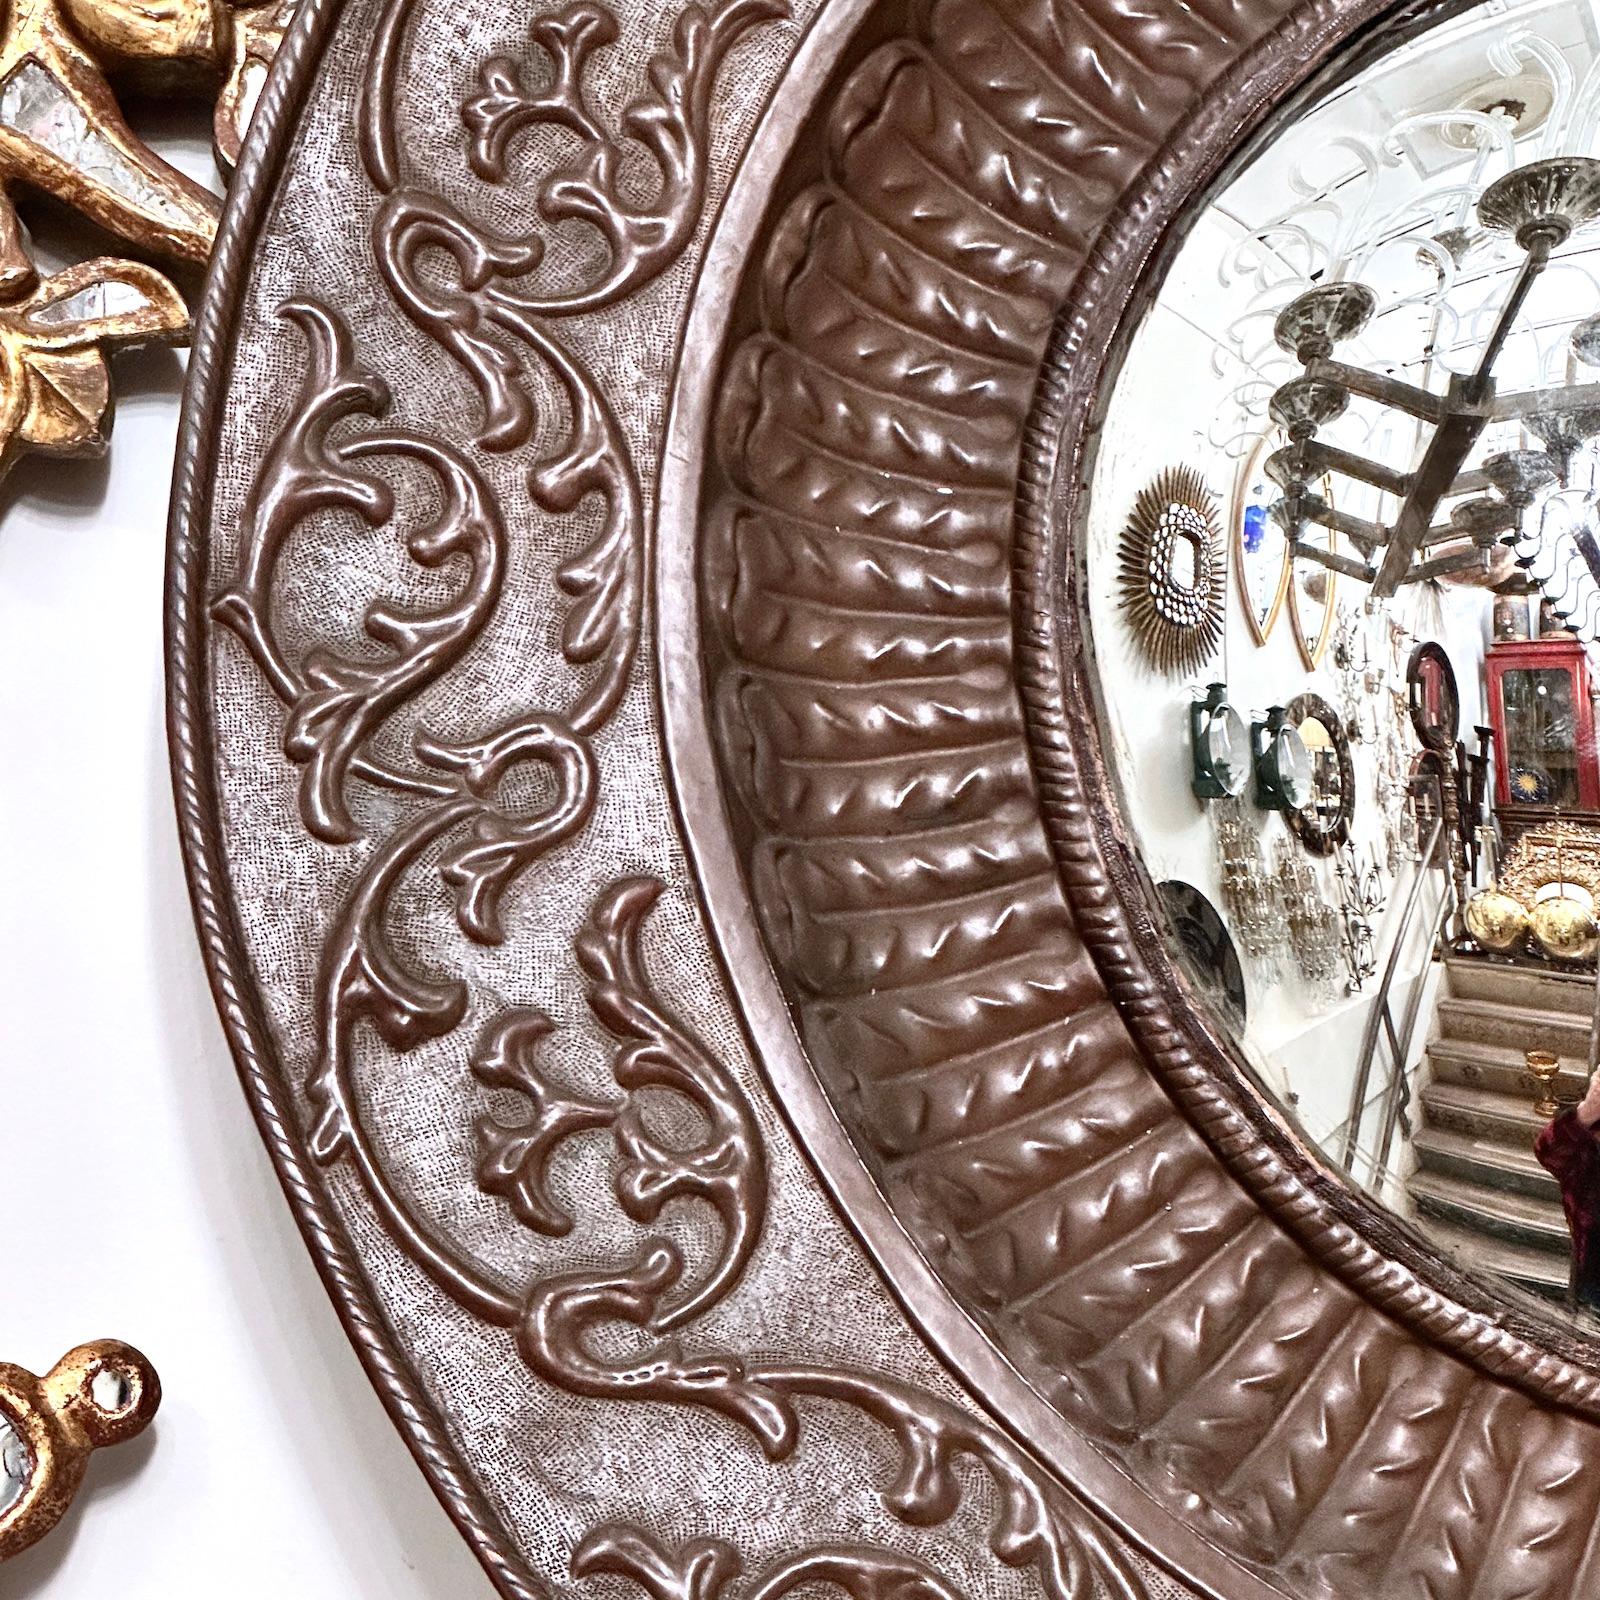 Miroir italien en cuivre martelé, datant de 1900, avec verre convexe et patine d'origine.

Mesures :
Diamètre : 36